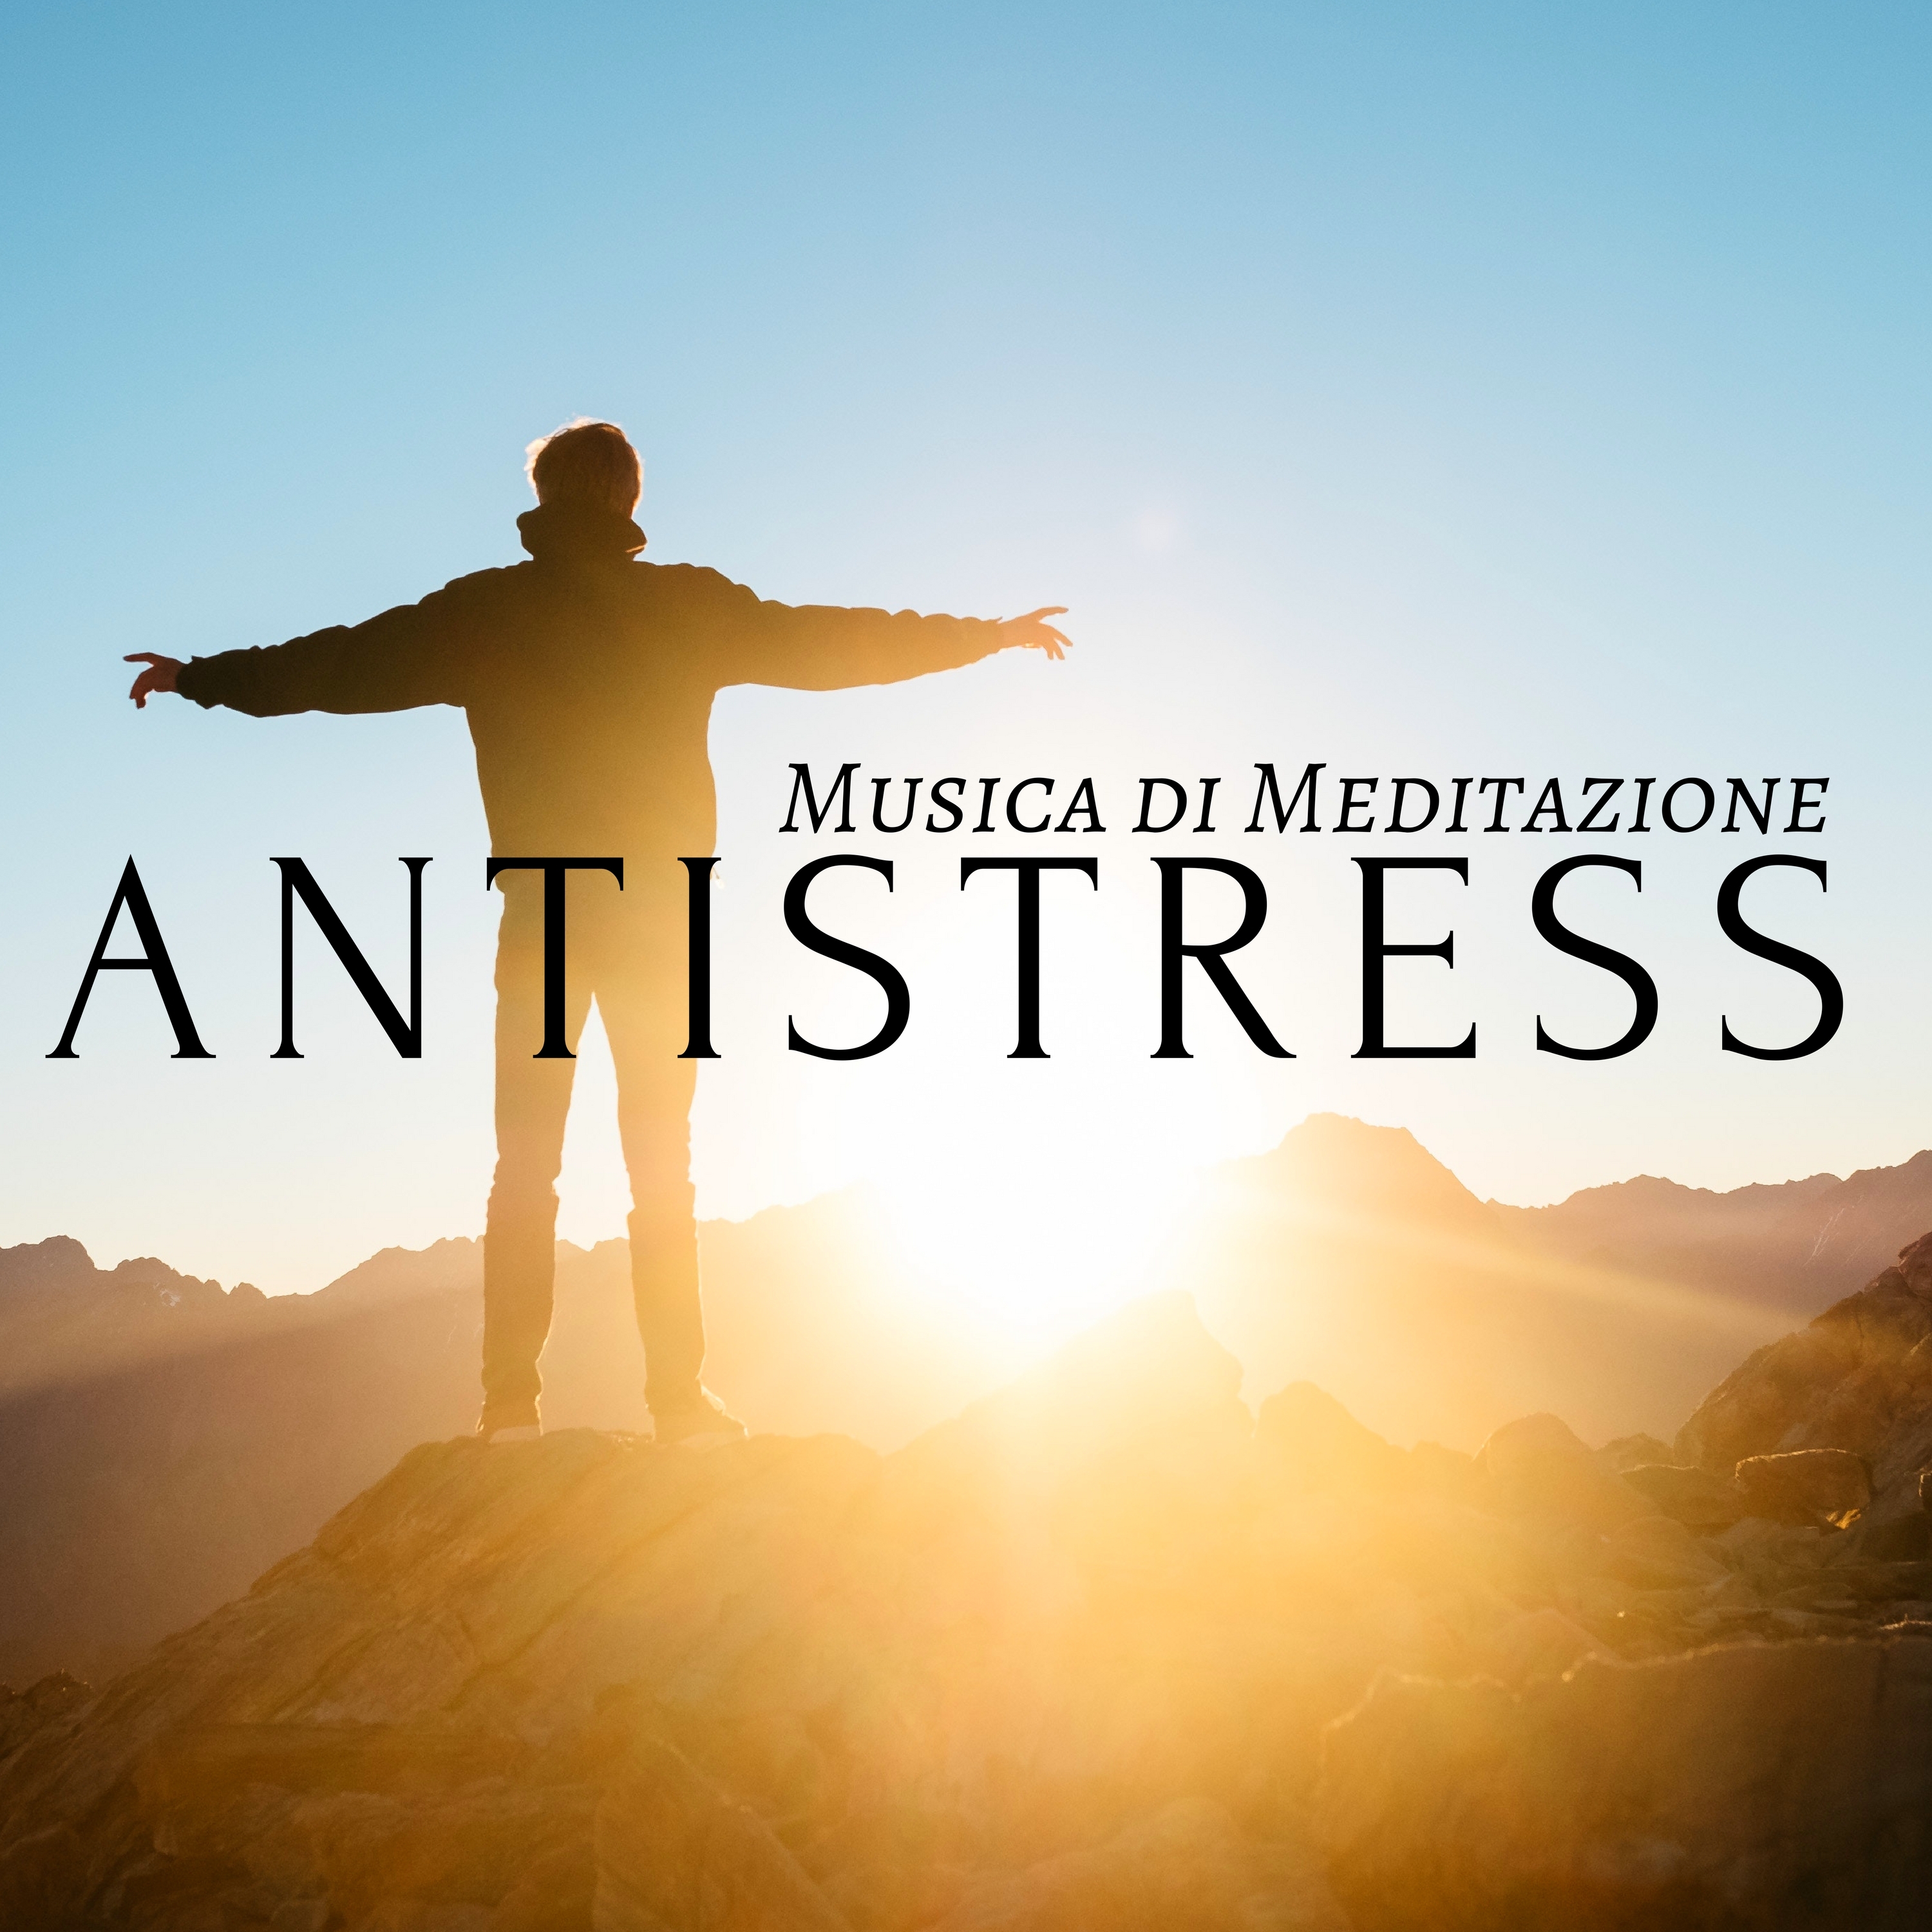 Antistress - Musica di Meditazione e di Yoga Strumentale per Tecniche di Rilassamento, Massagio, Sauna, Spa, Autostima